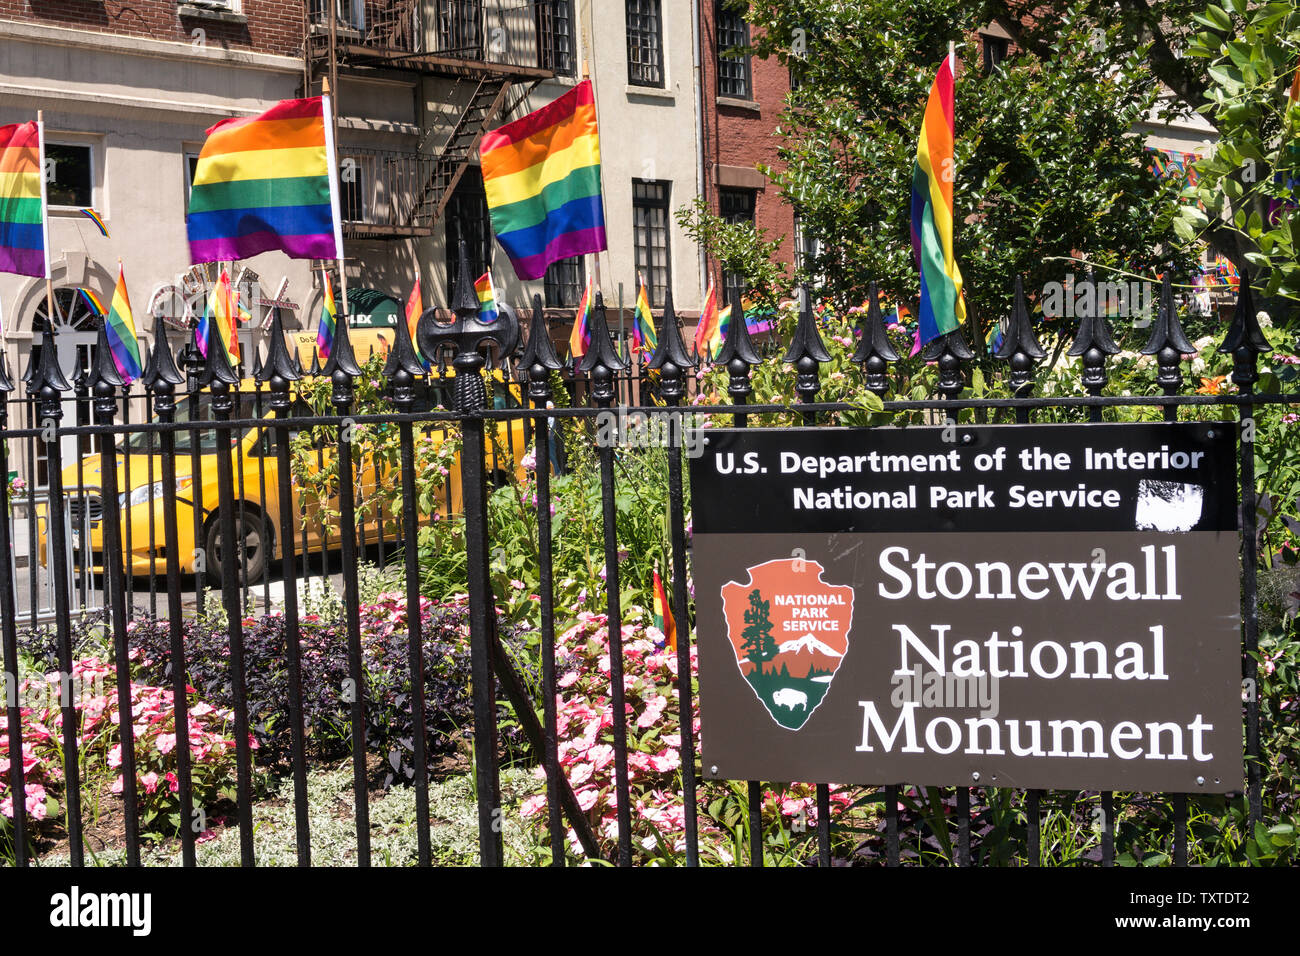 El Stonewall Monumento Nacional se encuentra en Greenwich Village, Nueva York, EE.UU. Foto de stock